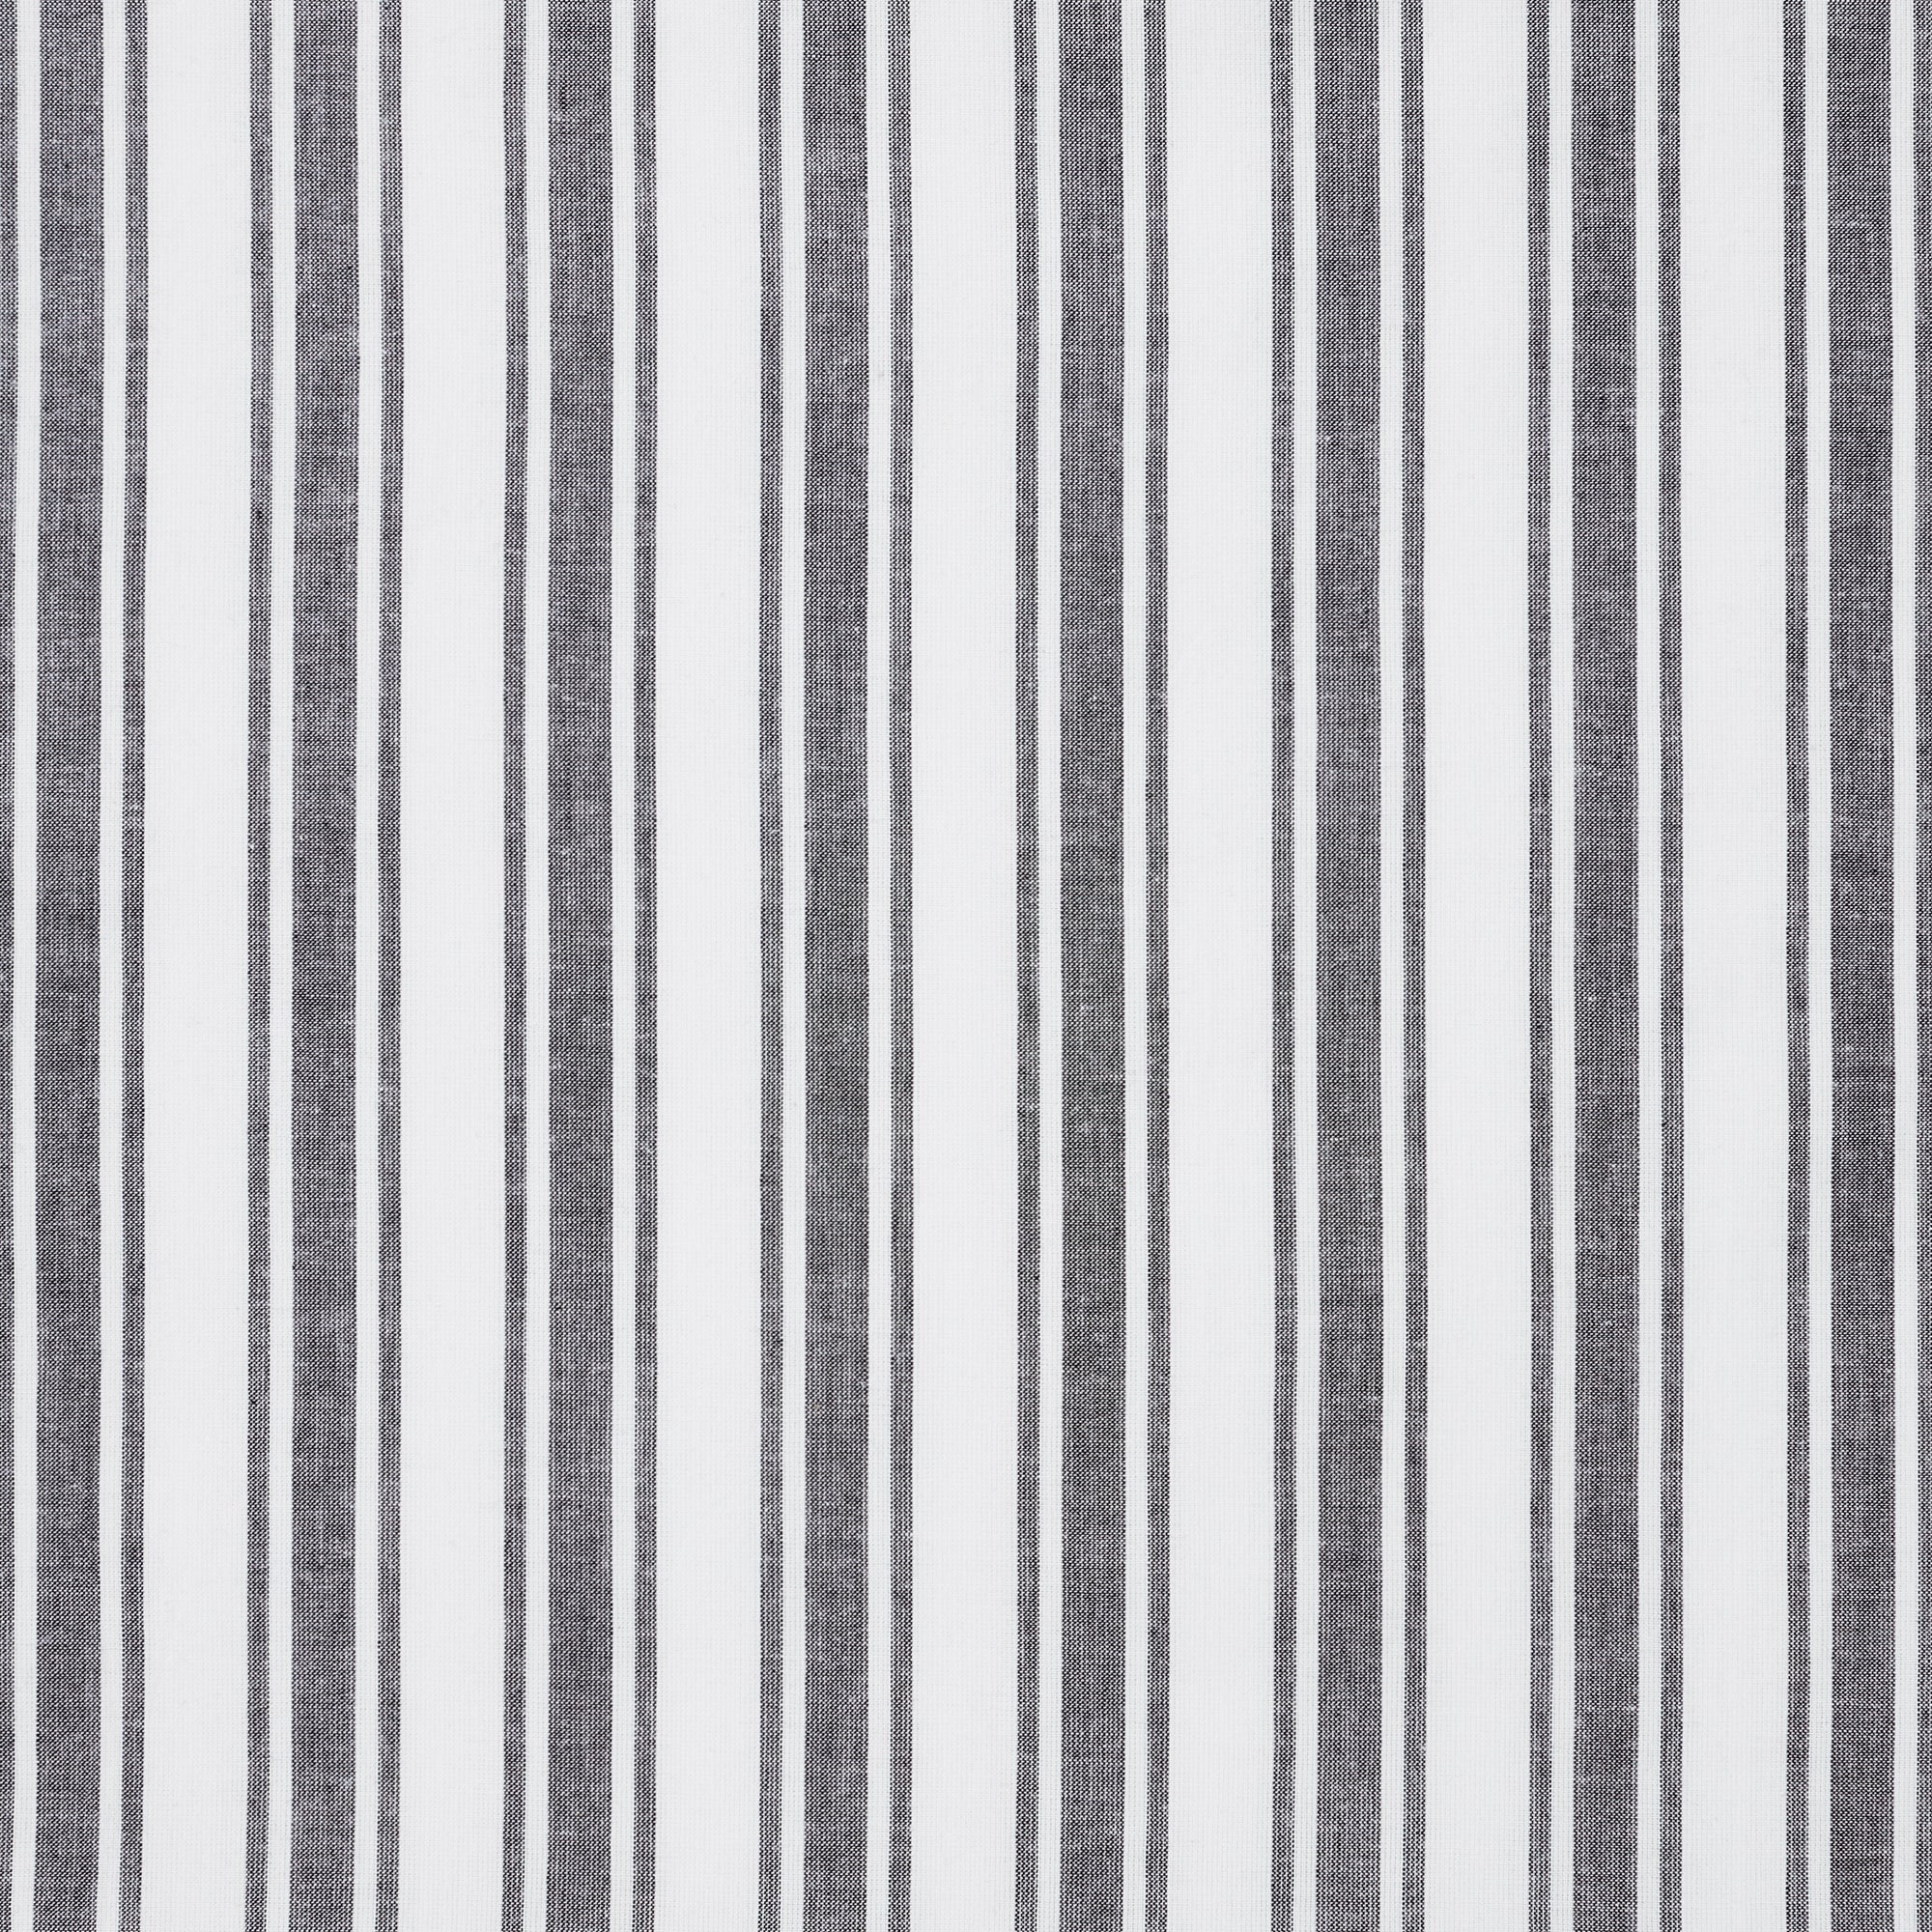 Sawyer Mill Black Ticking Stripe Shower Curtain 72x72 VHC Brands